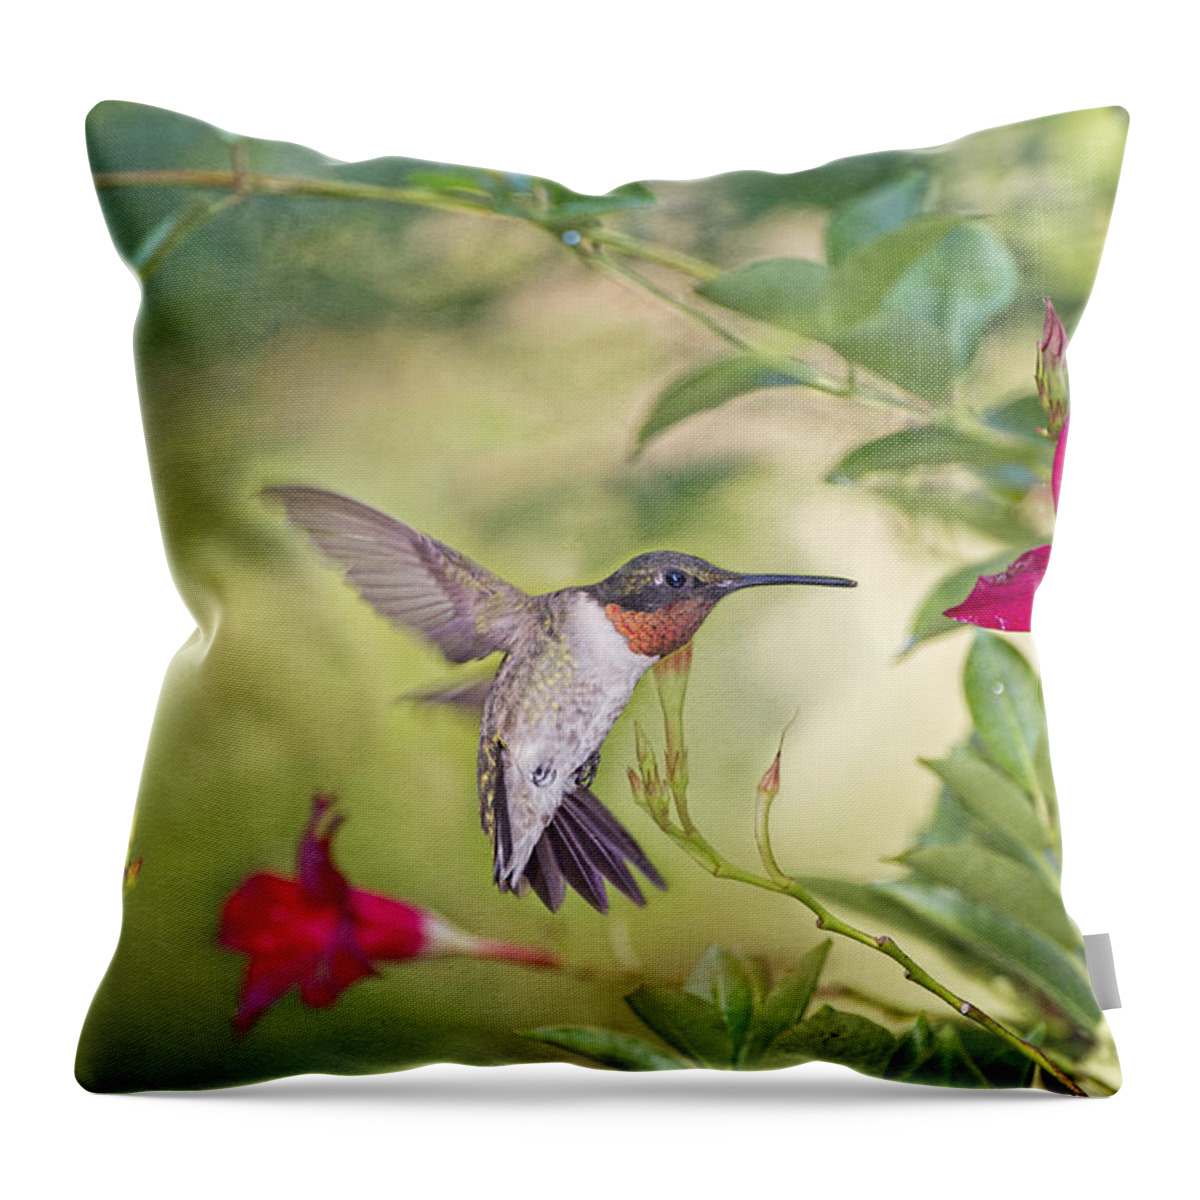 Summer Garden Throw Pillow featuring the photograph Summer Garden Hummingbird by Bonnie Barry